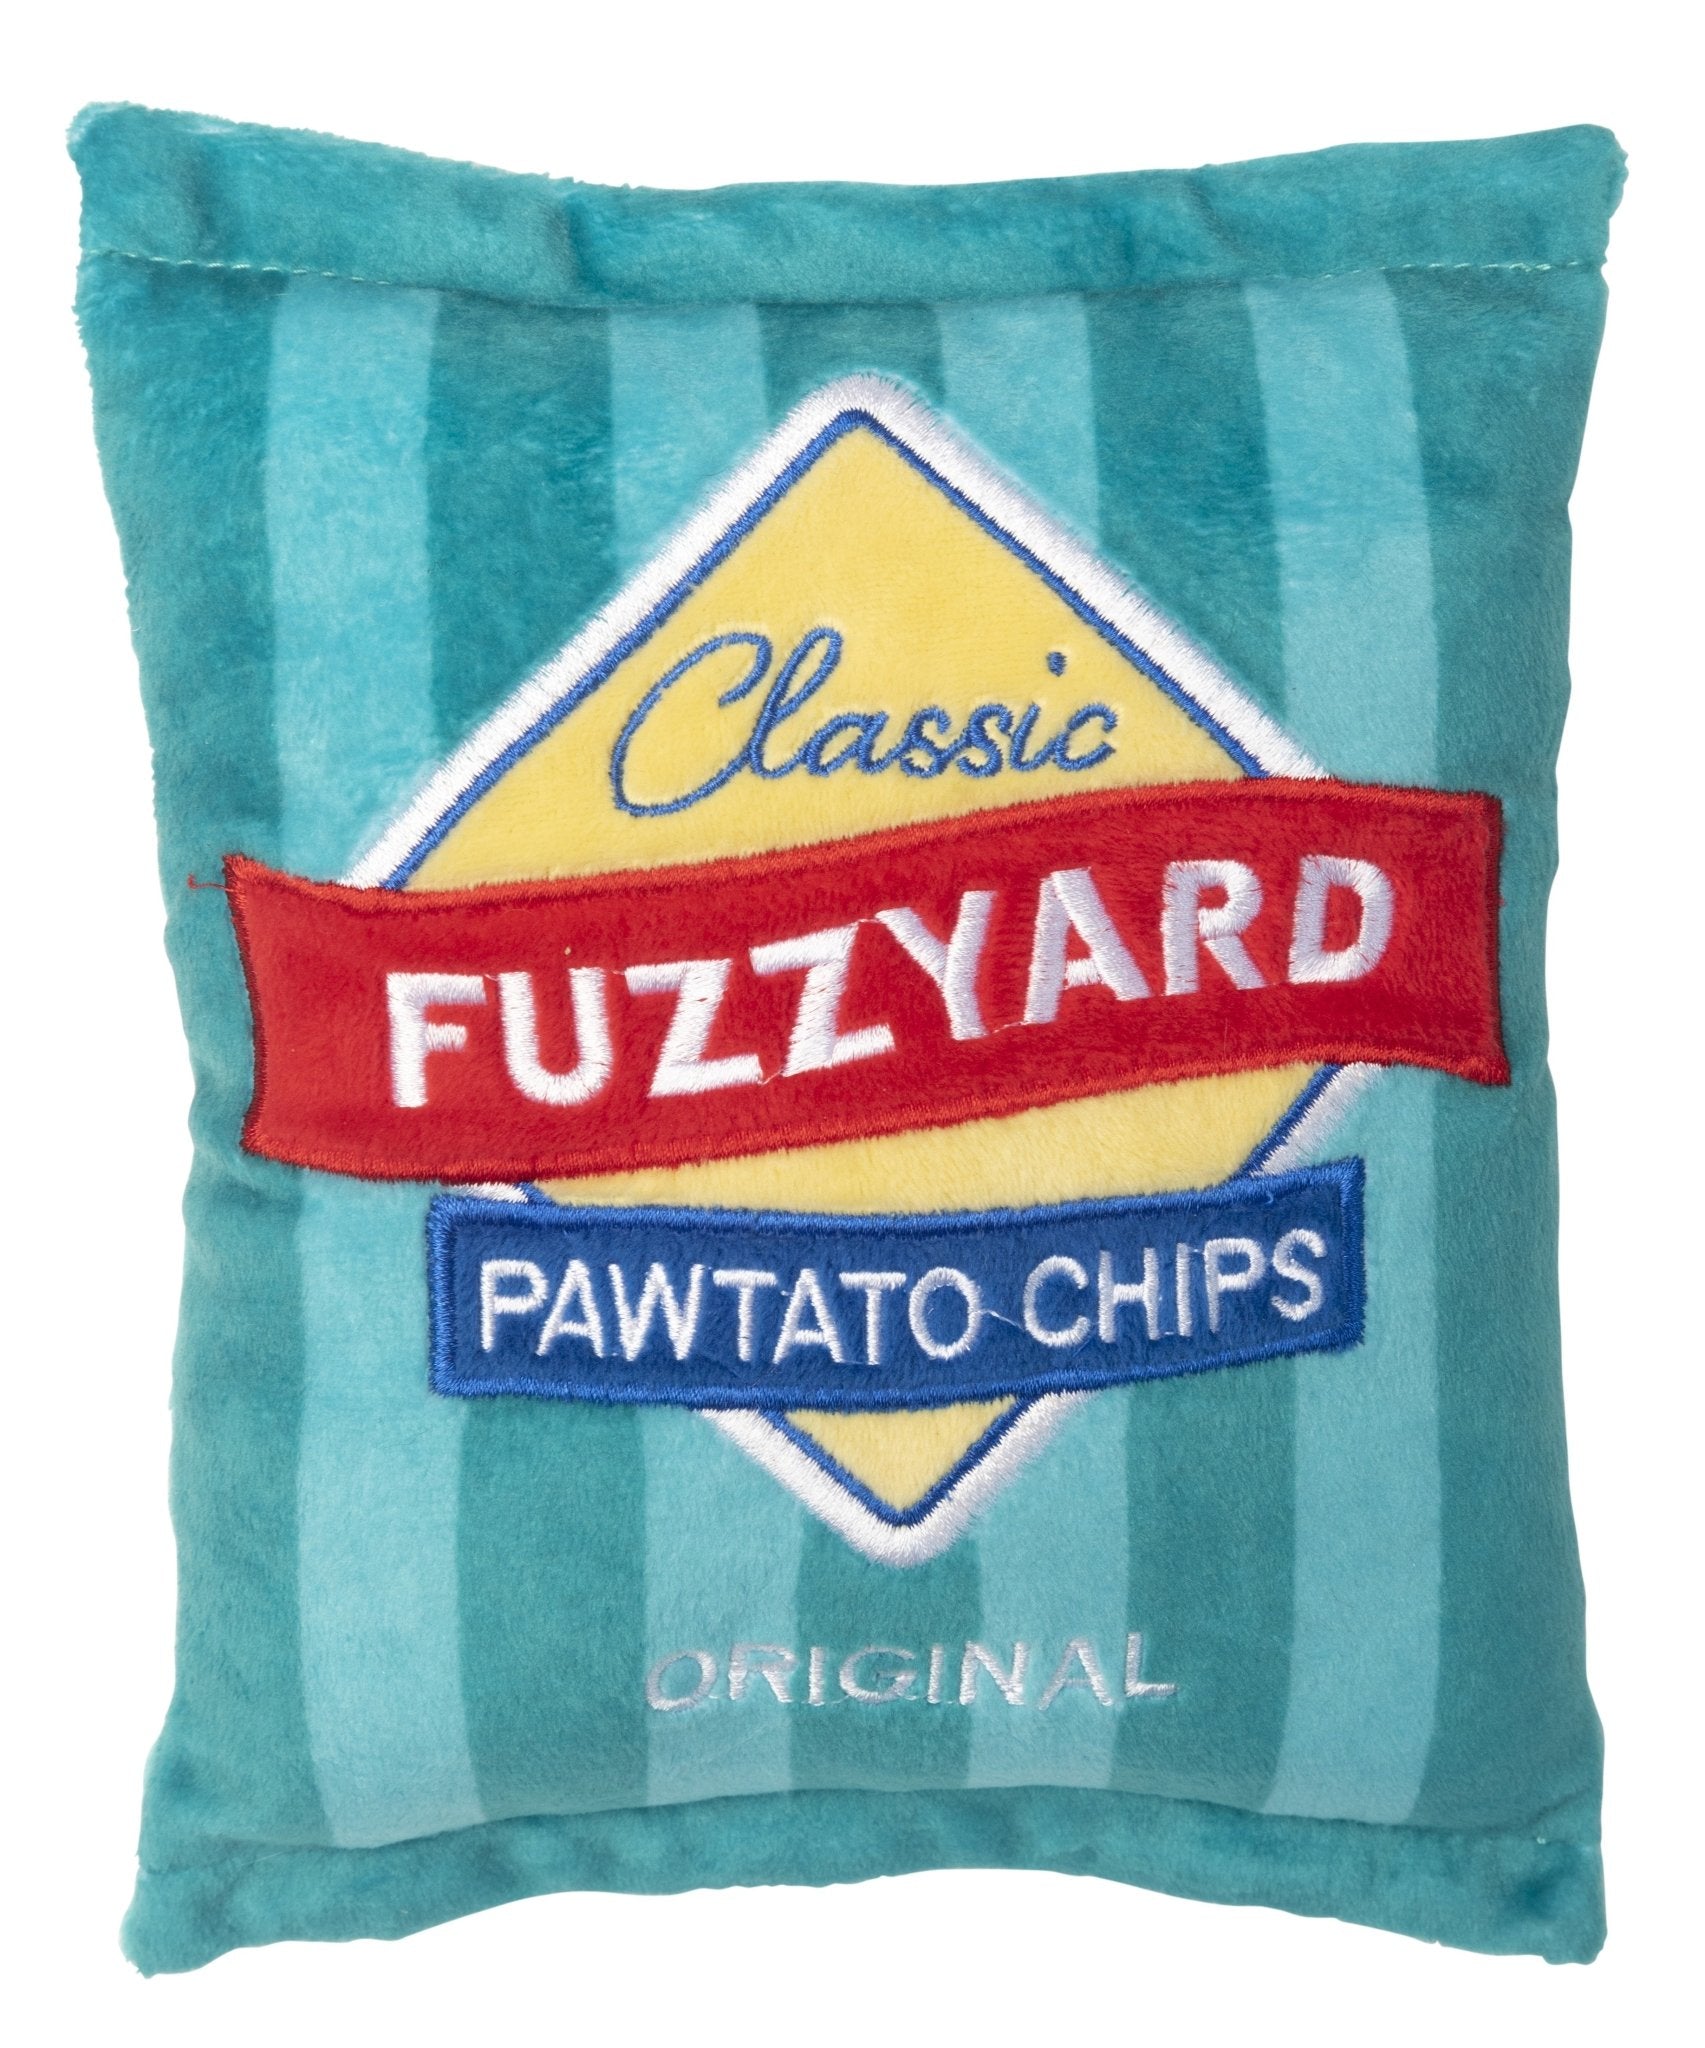 Fuzzyard Dog Toy - Pawtato Chip - Woonona Petfood & Produce